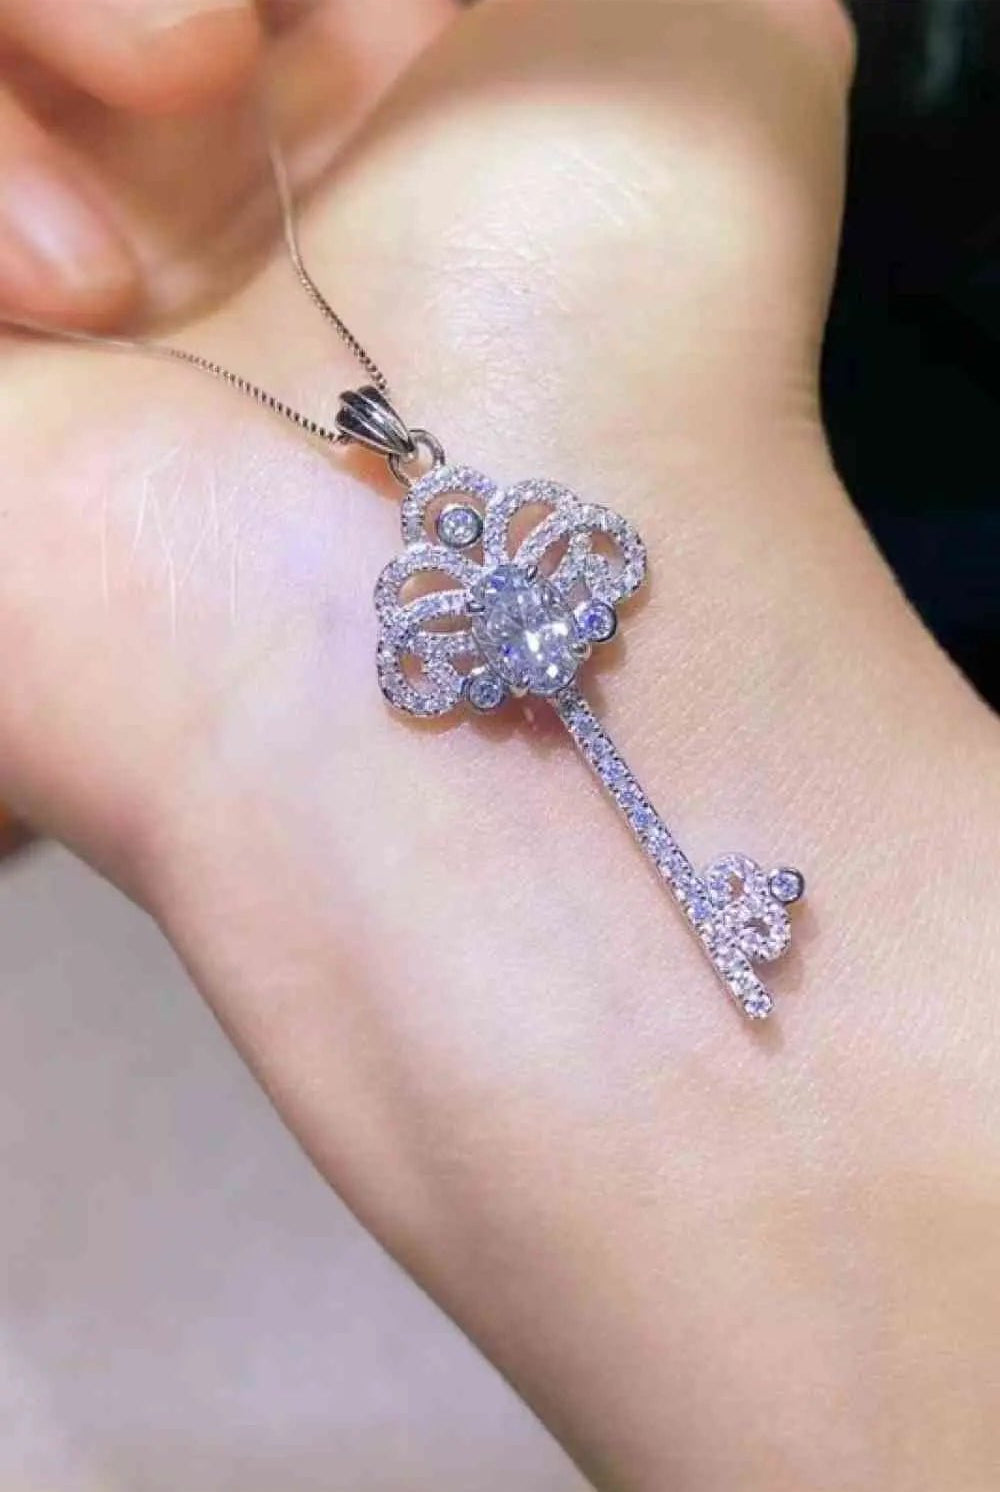 1 Carat Moissanite Key Pendant Necklace - GemThreads Boutique